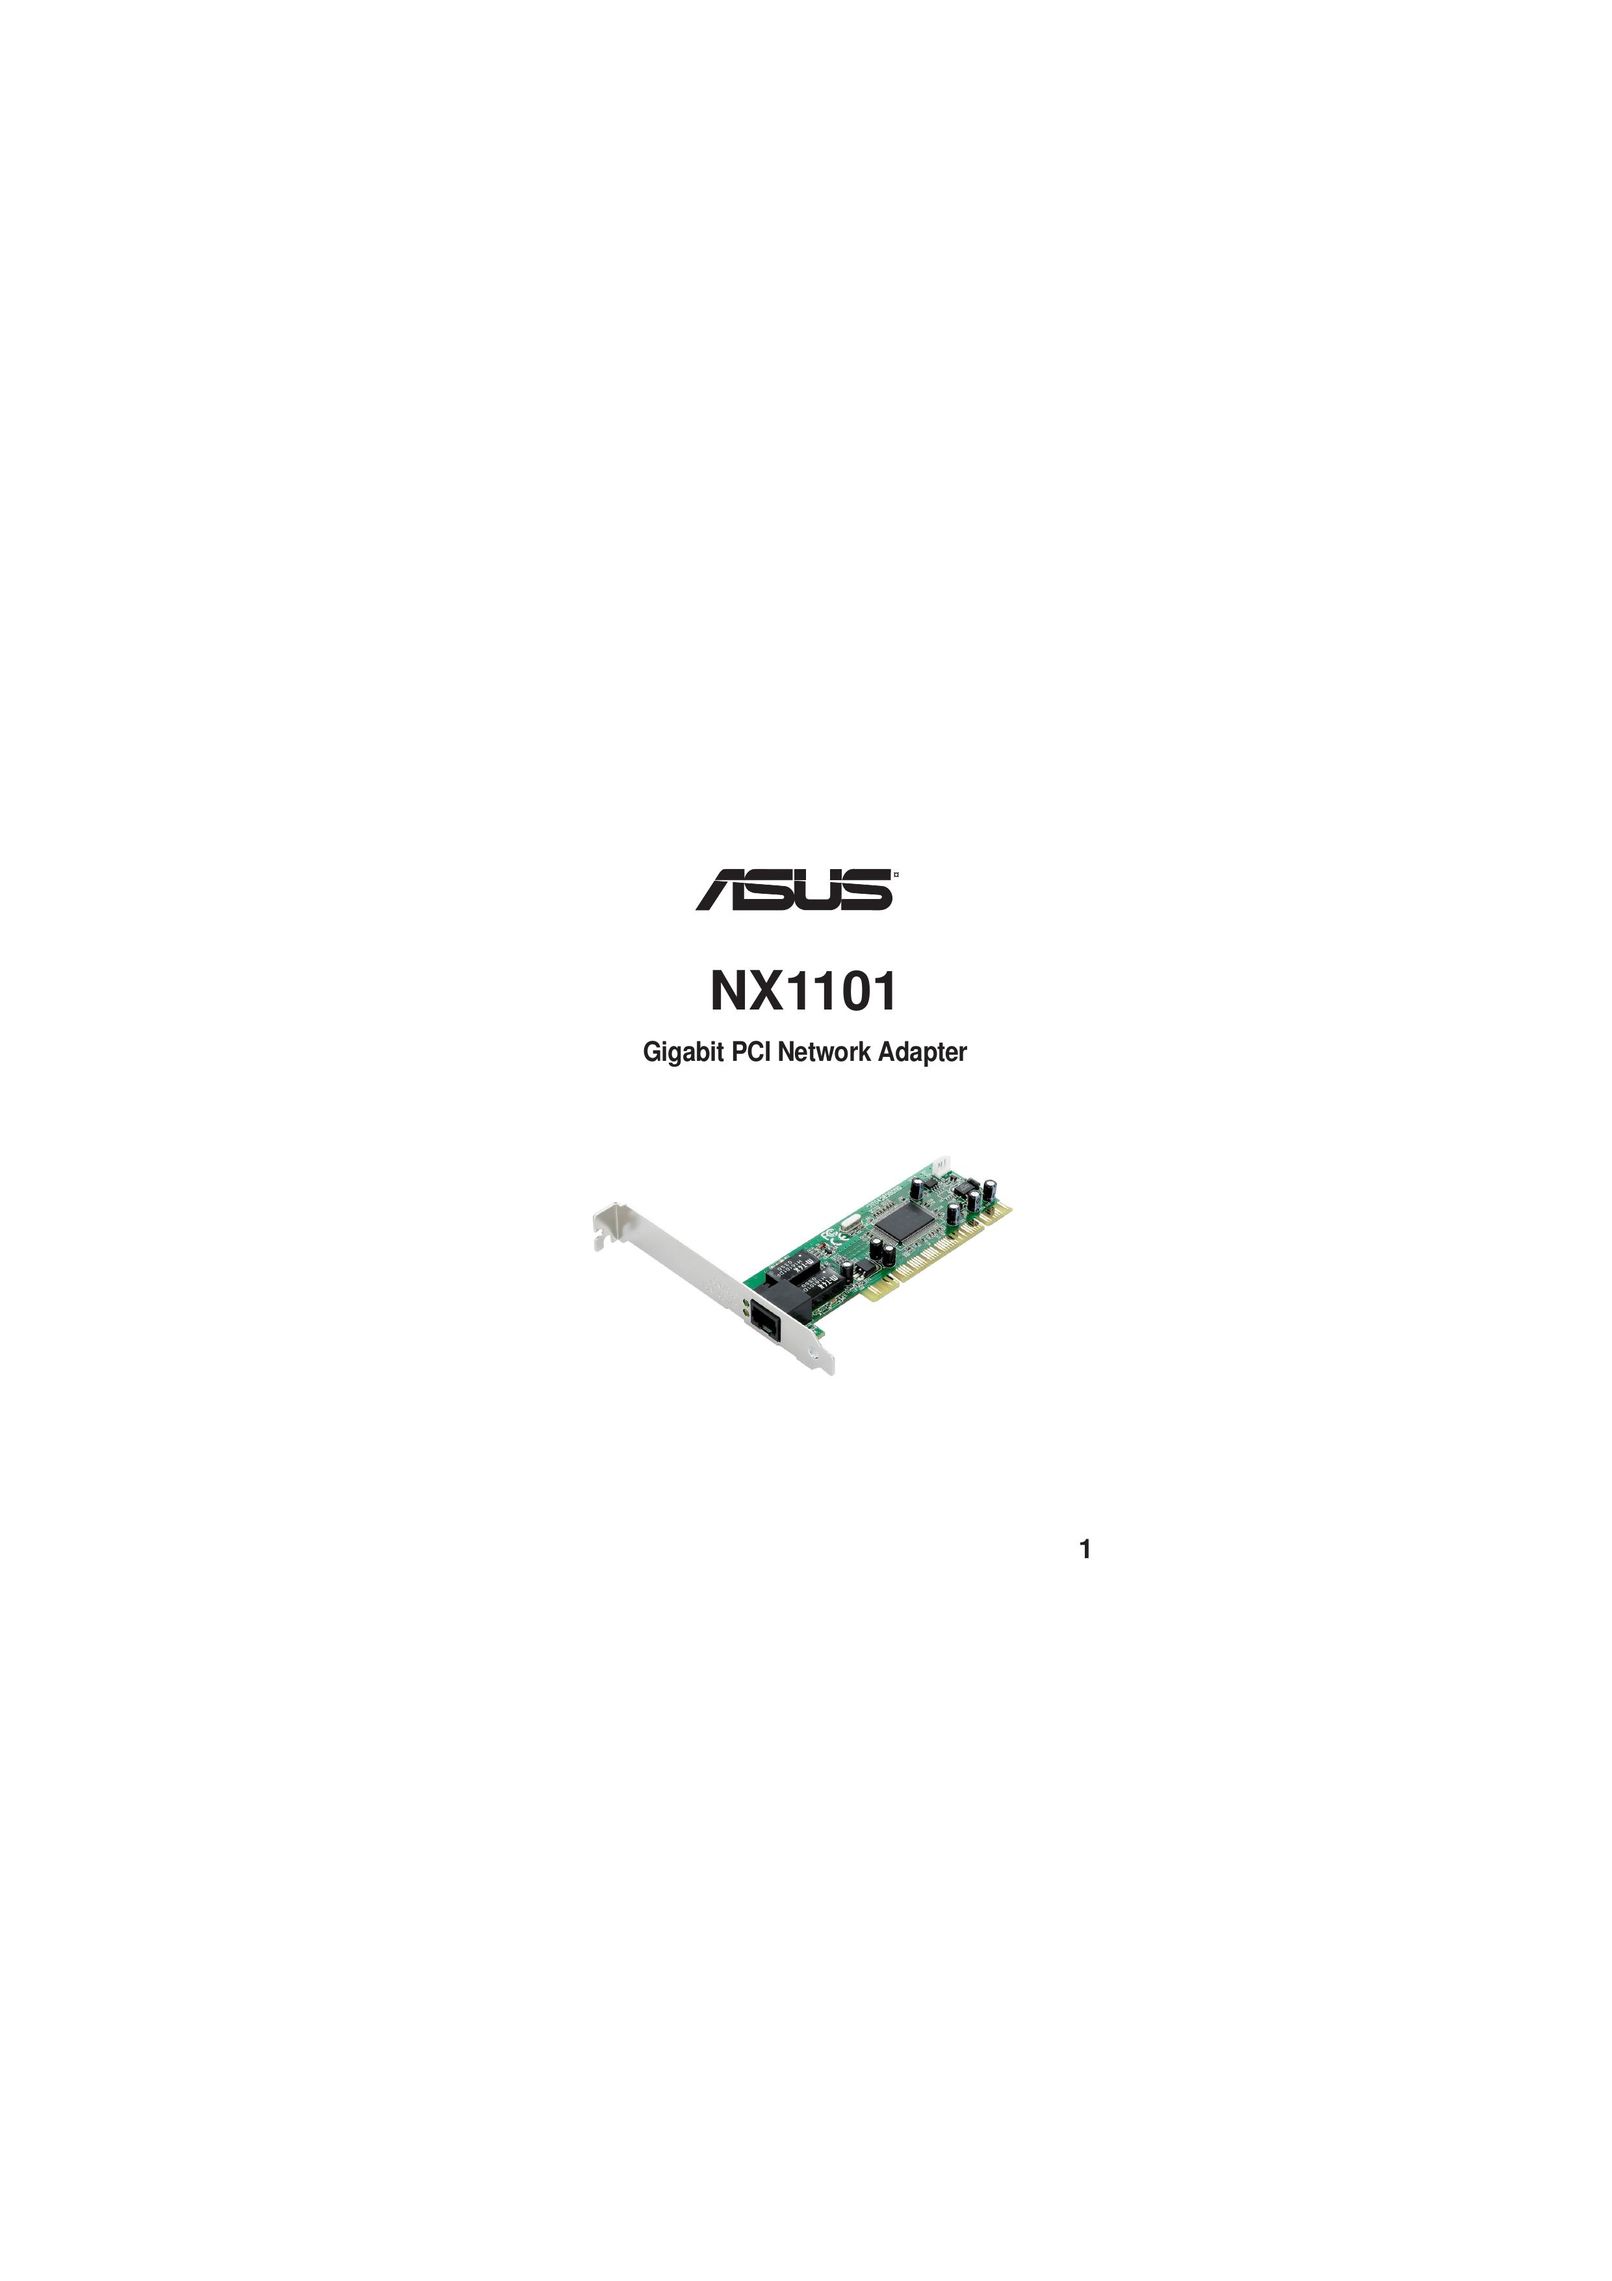 Asus NX1101 Network Card User Manual